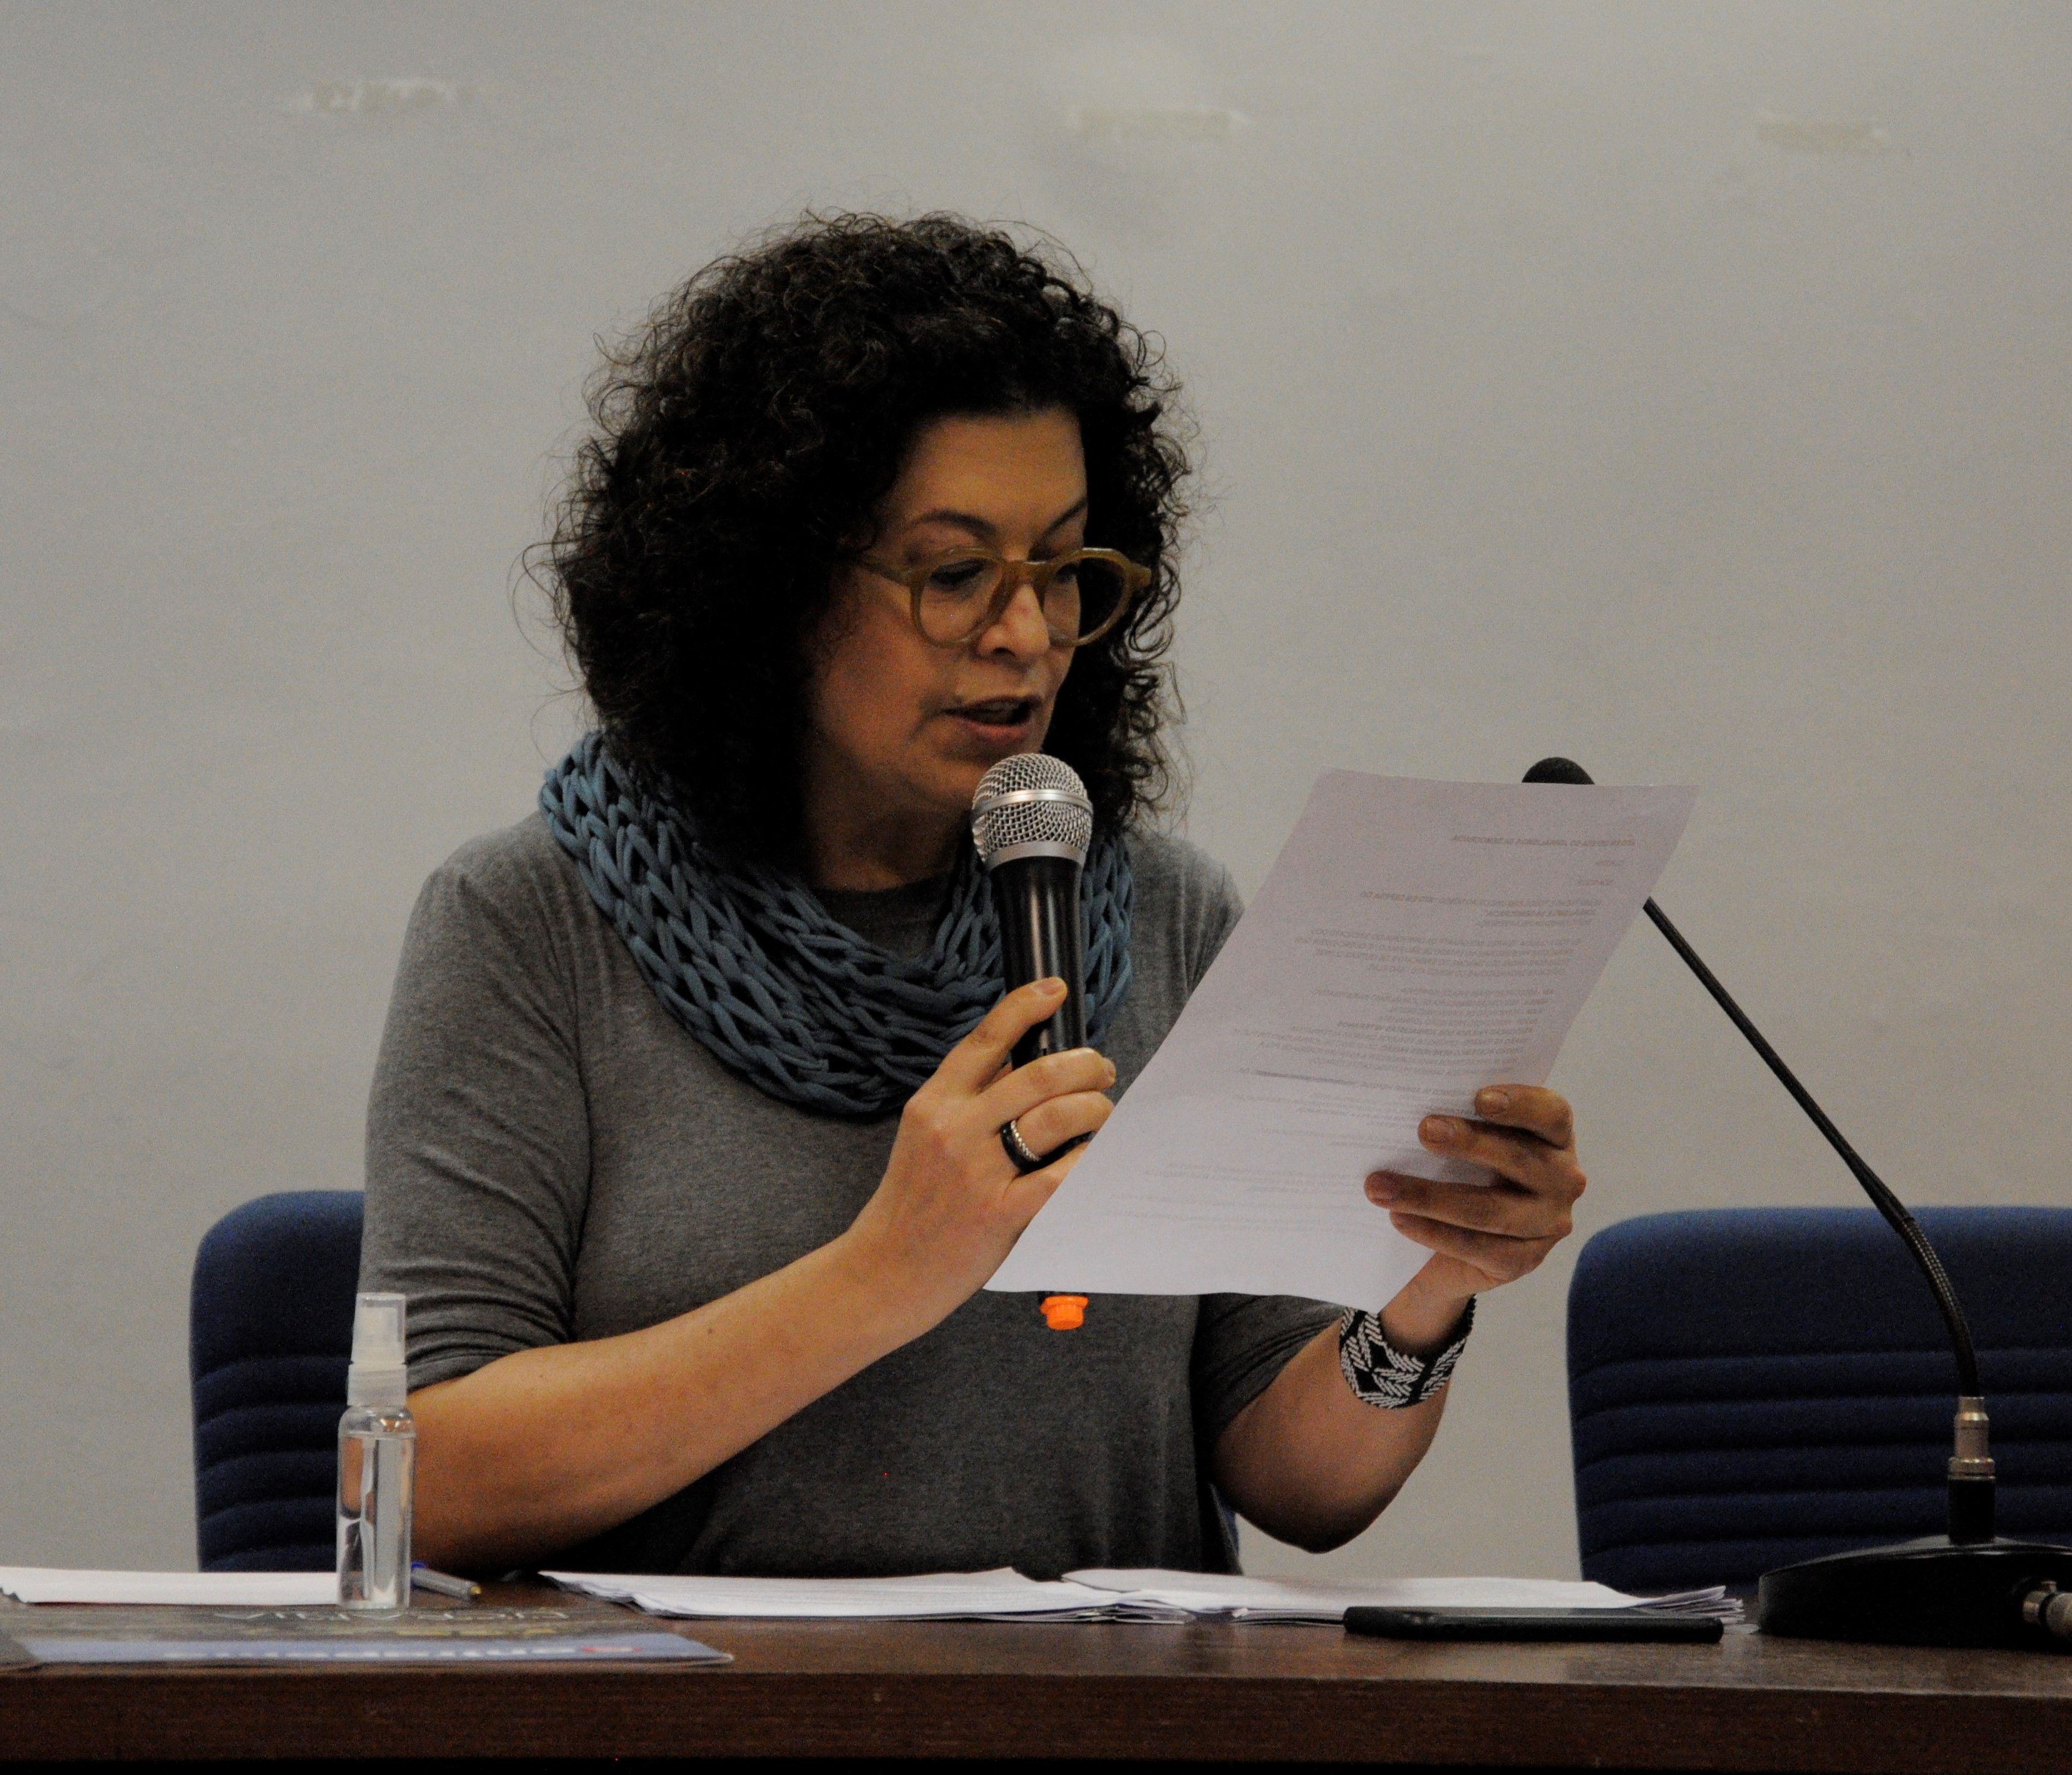 A jornalista Cláudia Tavares enquanto presidia a mesa no “Ato em Defesa do Jornalismo e da Democracia” nesta terça-feira (27) na PUC-SP. Foto: Maria Ferreira dos Santos